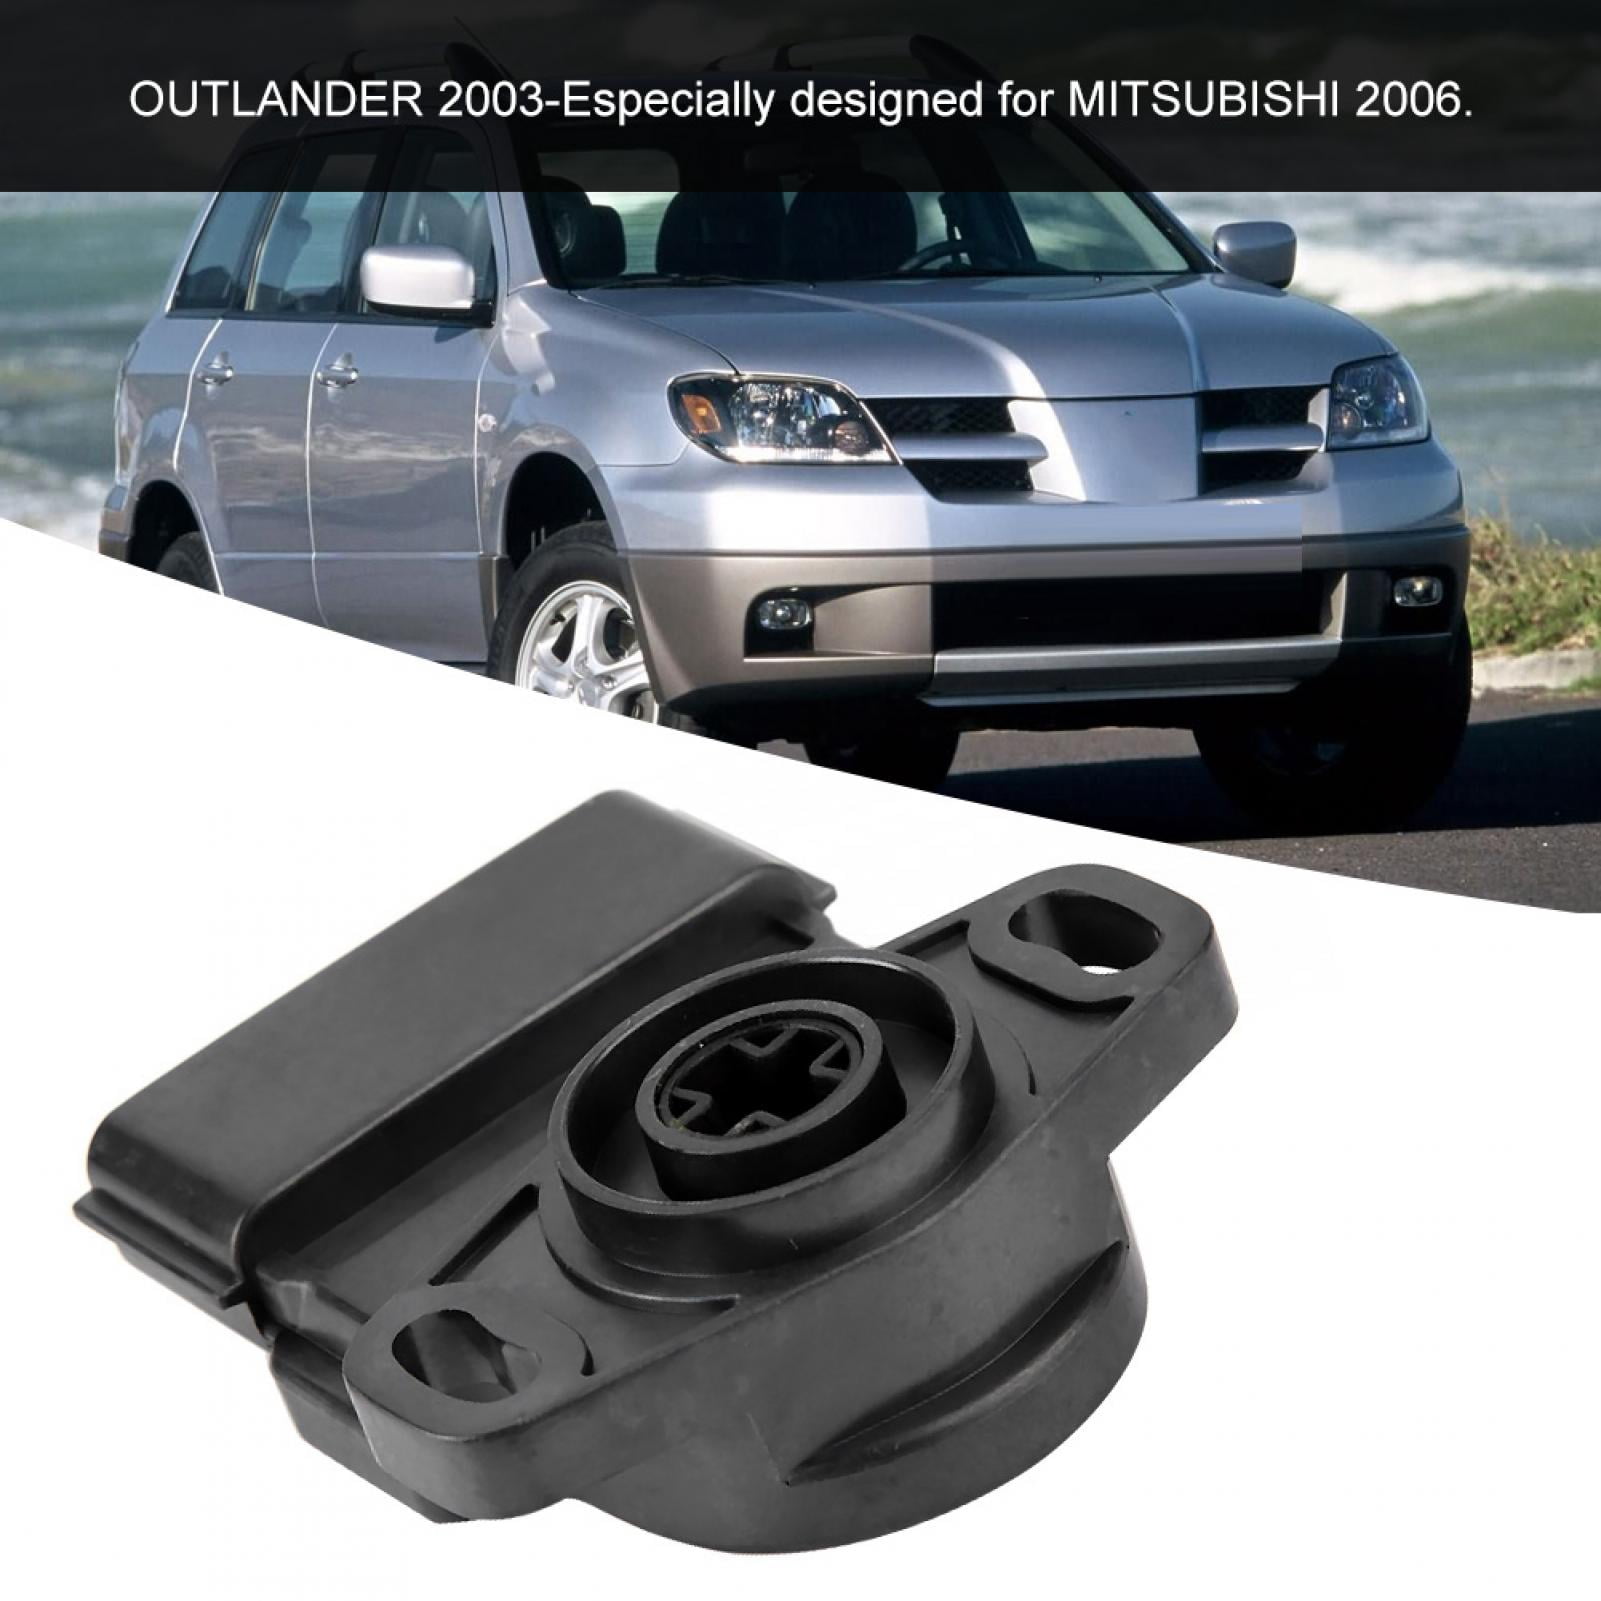 2006 2005-2006 Outlander 2003-2004 2004-2005 MR578861 Pedal Travel Position Throttle Sensor 8 Pins Fits: Mitsubishi Lancer 2002-2003 